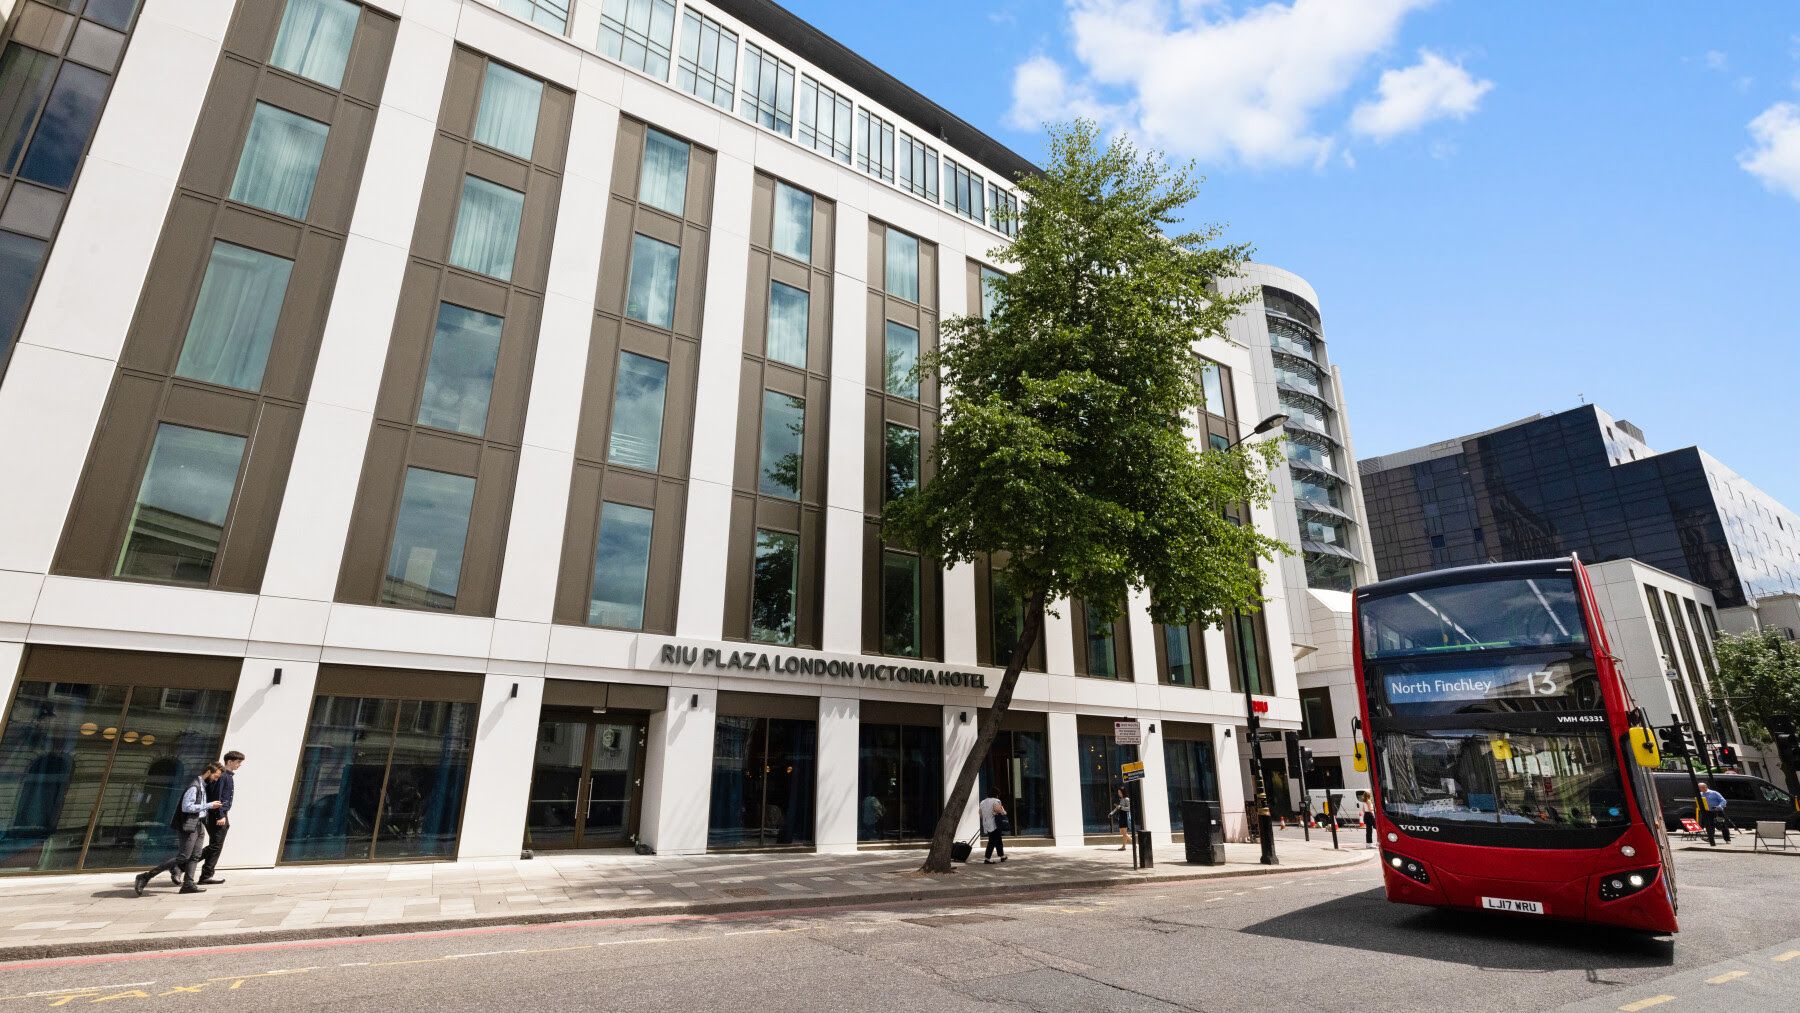 El nuevo hotel Riu Plaza London Victoria, ubicado en pleno centro de Londres